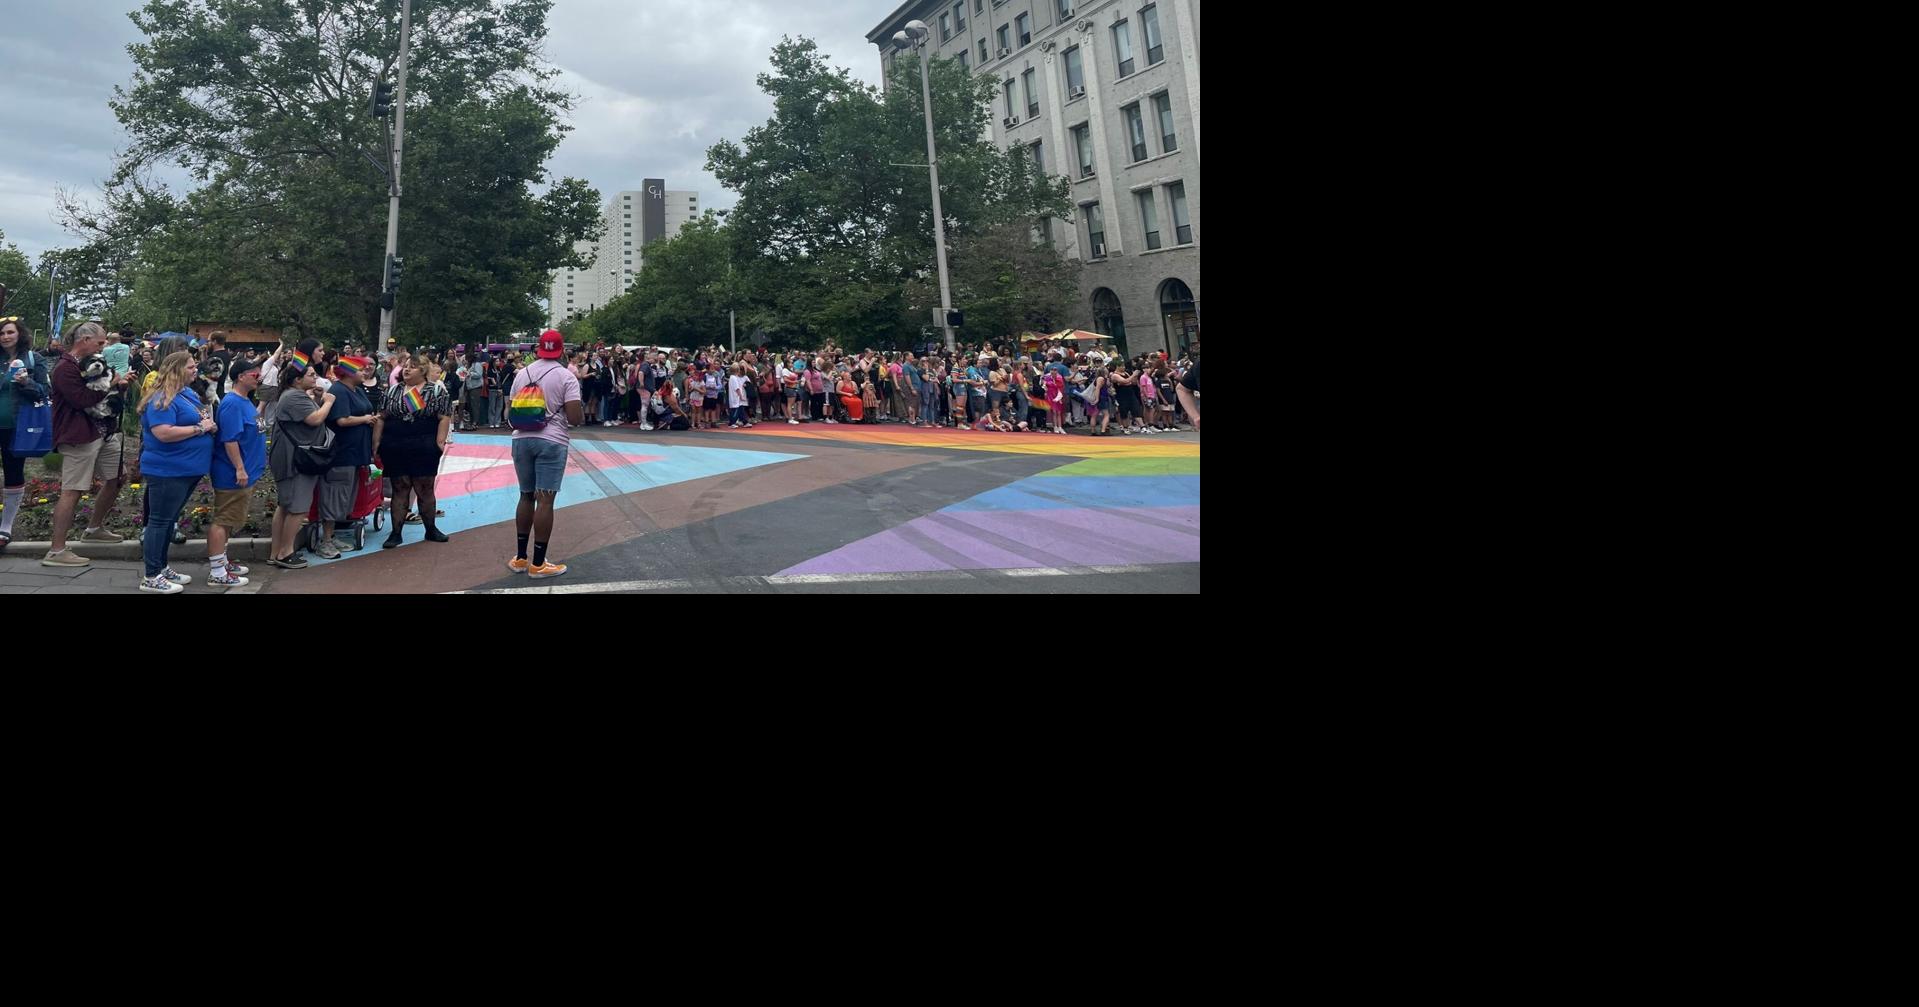 'Never Going Back' Spokane Pride Parade returns, adding color to